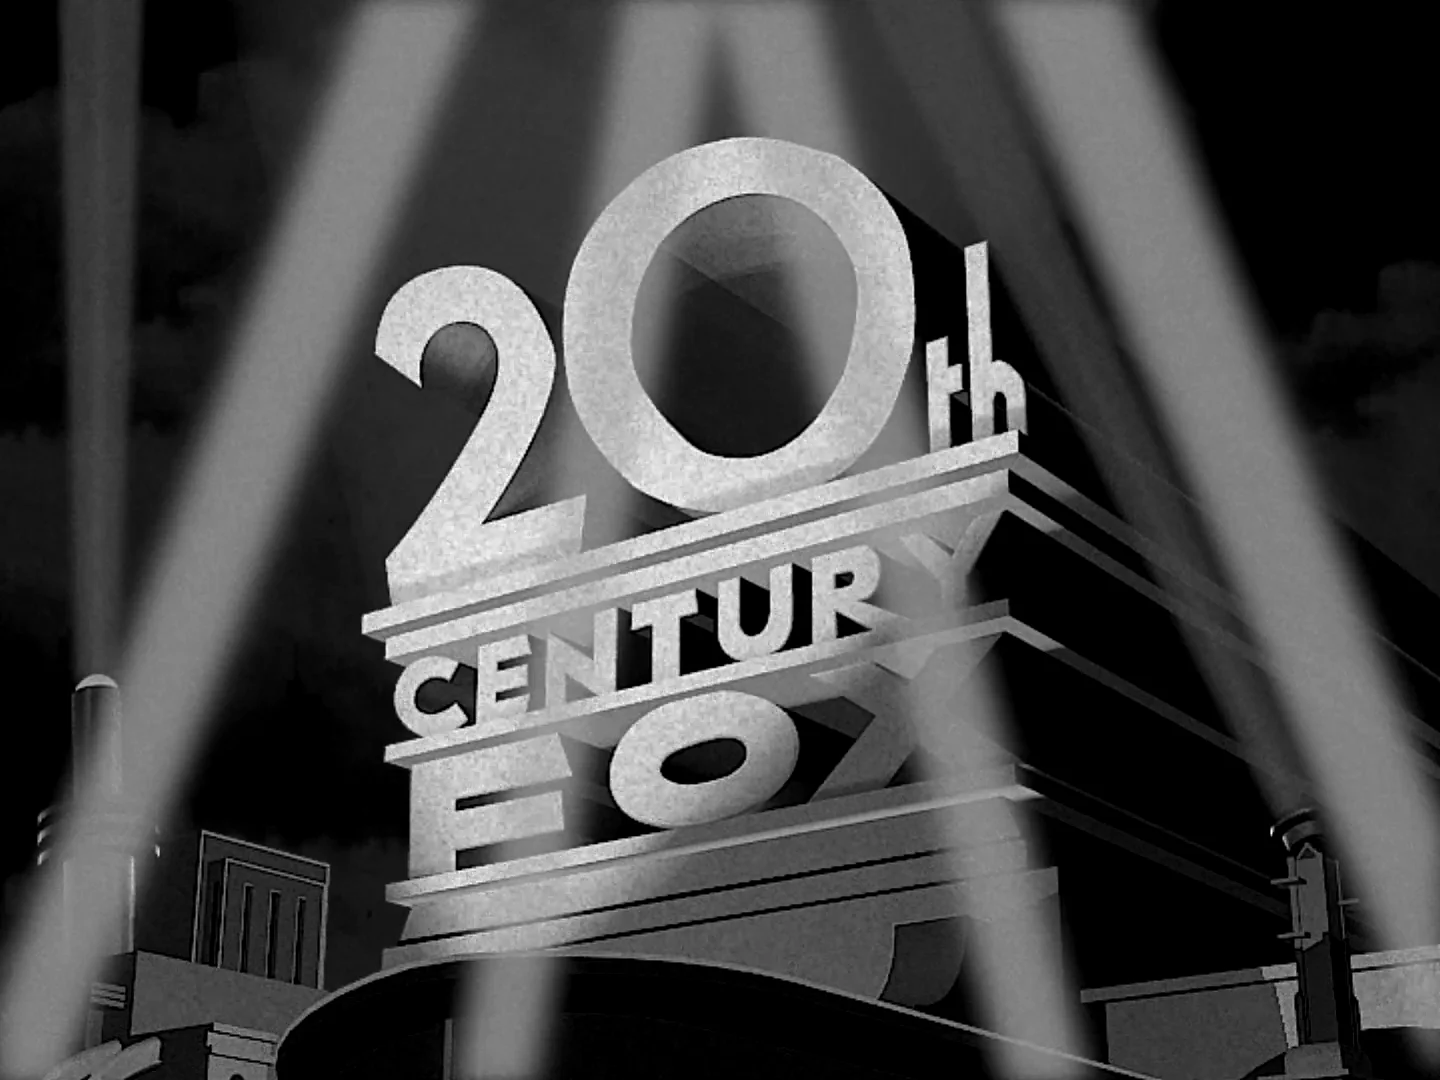 20th Century Fox Logo - Made in Blender 2.79 on Vimeo